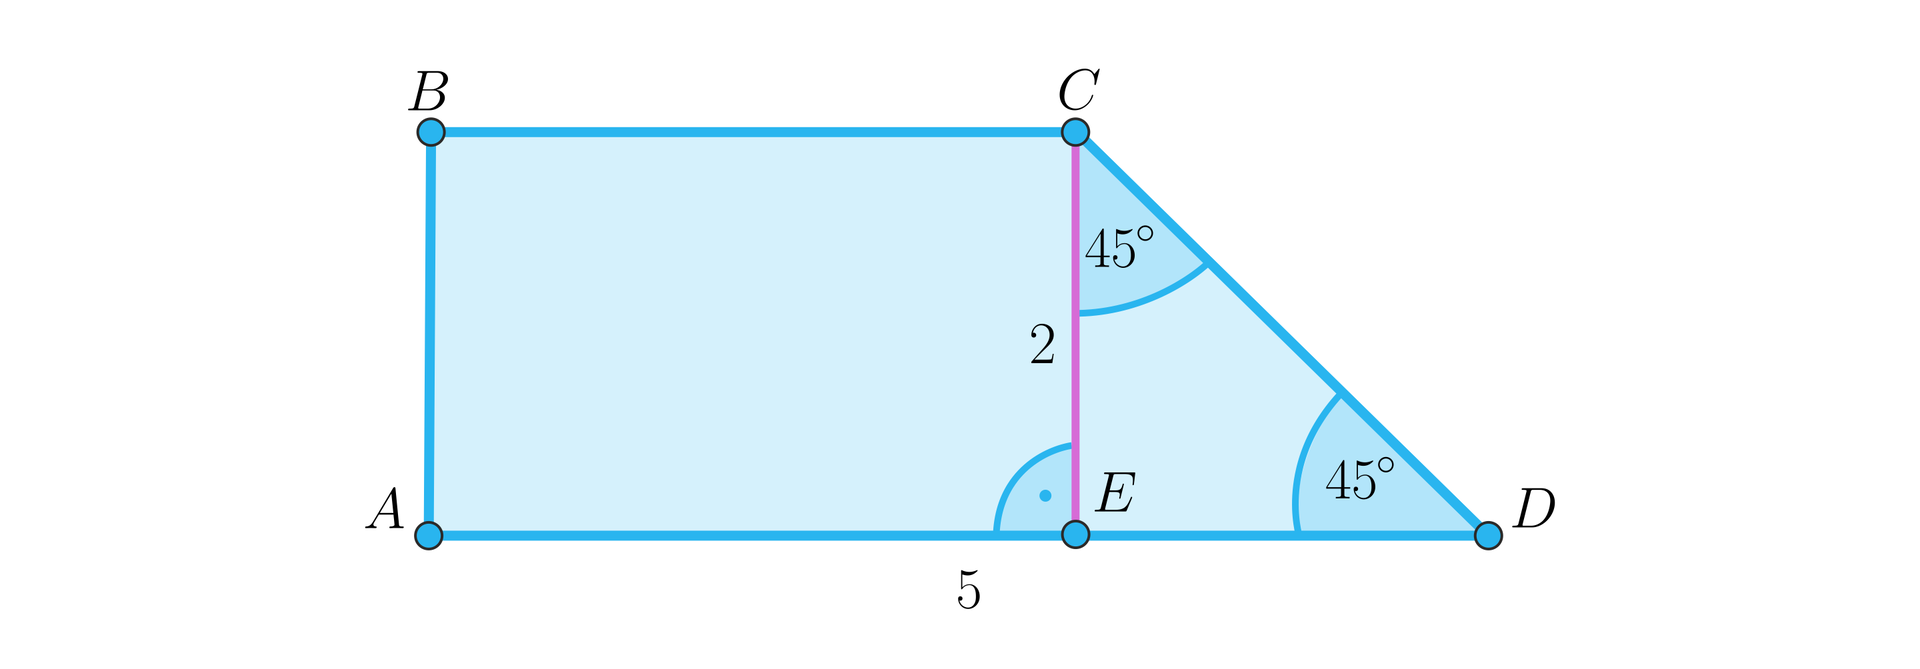 Rysunek przedstawia trapez prostokątny A B C D. Z górnego prawego wierzchołka figury upuszczono wysokość C E o długości dwa. Kawałek dolnej podstawy, czyli odcinek A E ma długość pięć. Wysokość trapezu wraz z lewym ramieniem i kawałkiem dolnej podstawy tworzą trójkąt prostokątny równoramienny C E D, gdzie przy wierzchołku E znajduje się kąt prosty, a przy wierzchołkach C oraz D znajdują się kąty 45 stopni.